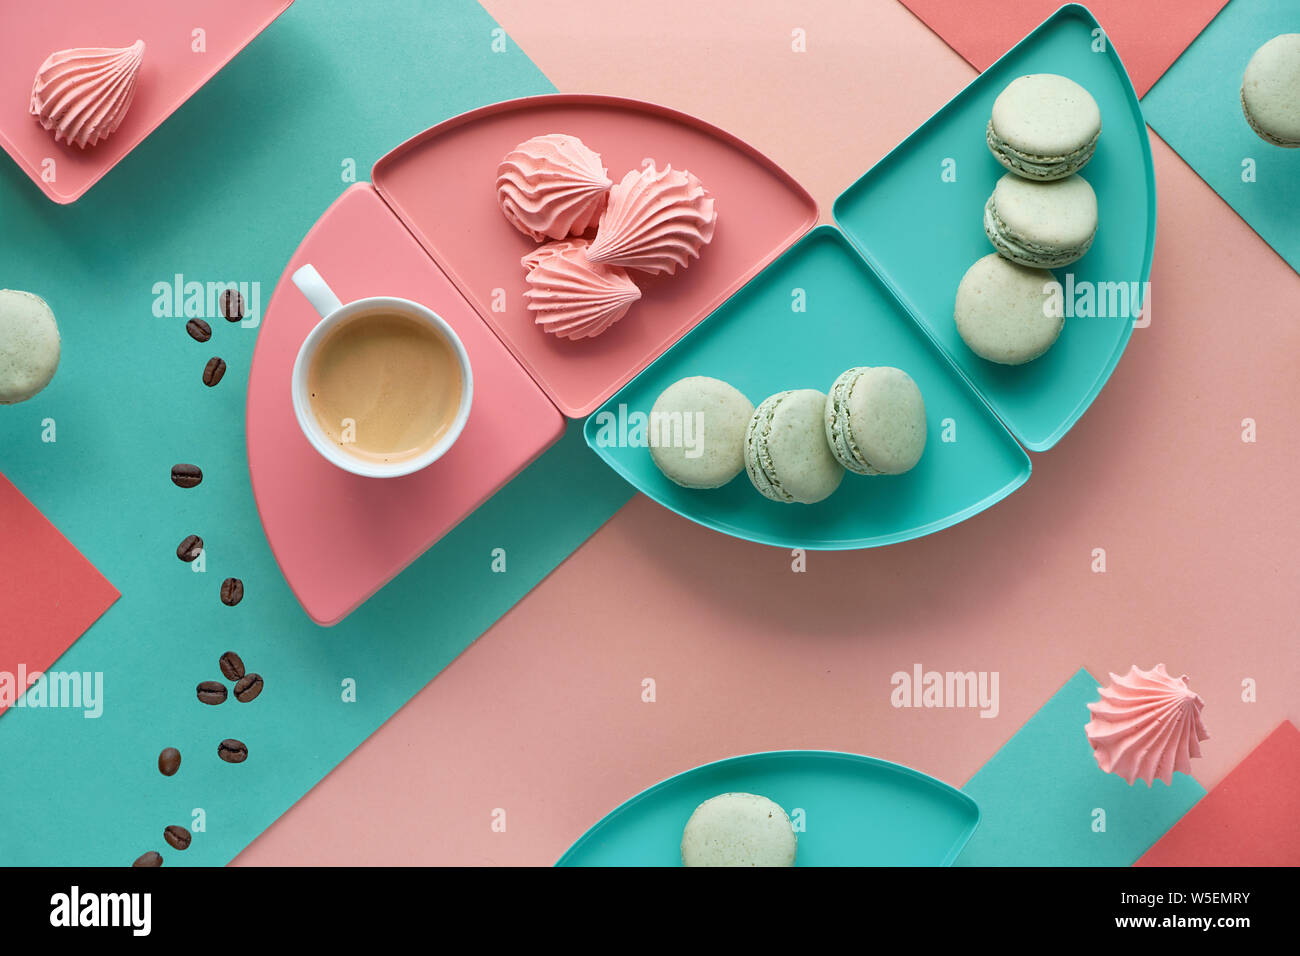 Moyenne géométrique fond de papier de menthe et de couleurs corail avec du café, les guimauves et macarons Banque D'Images